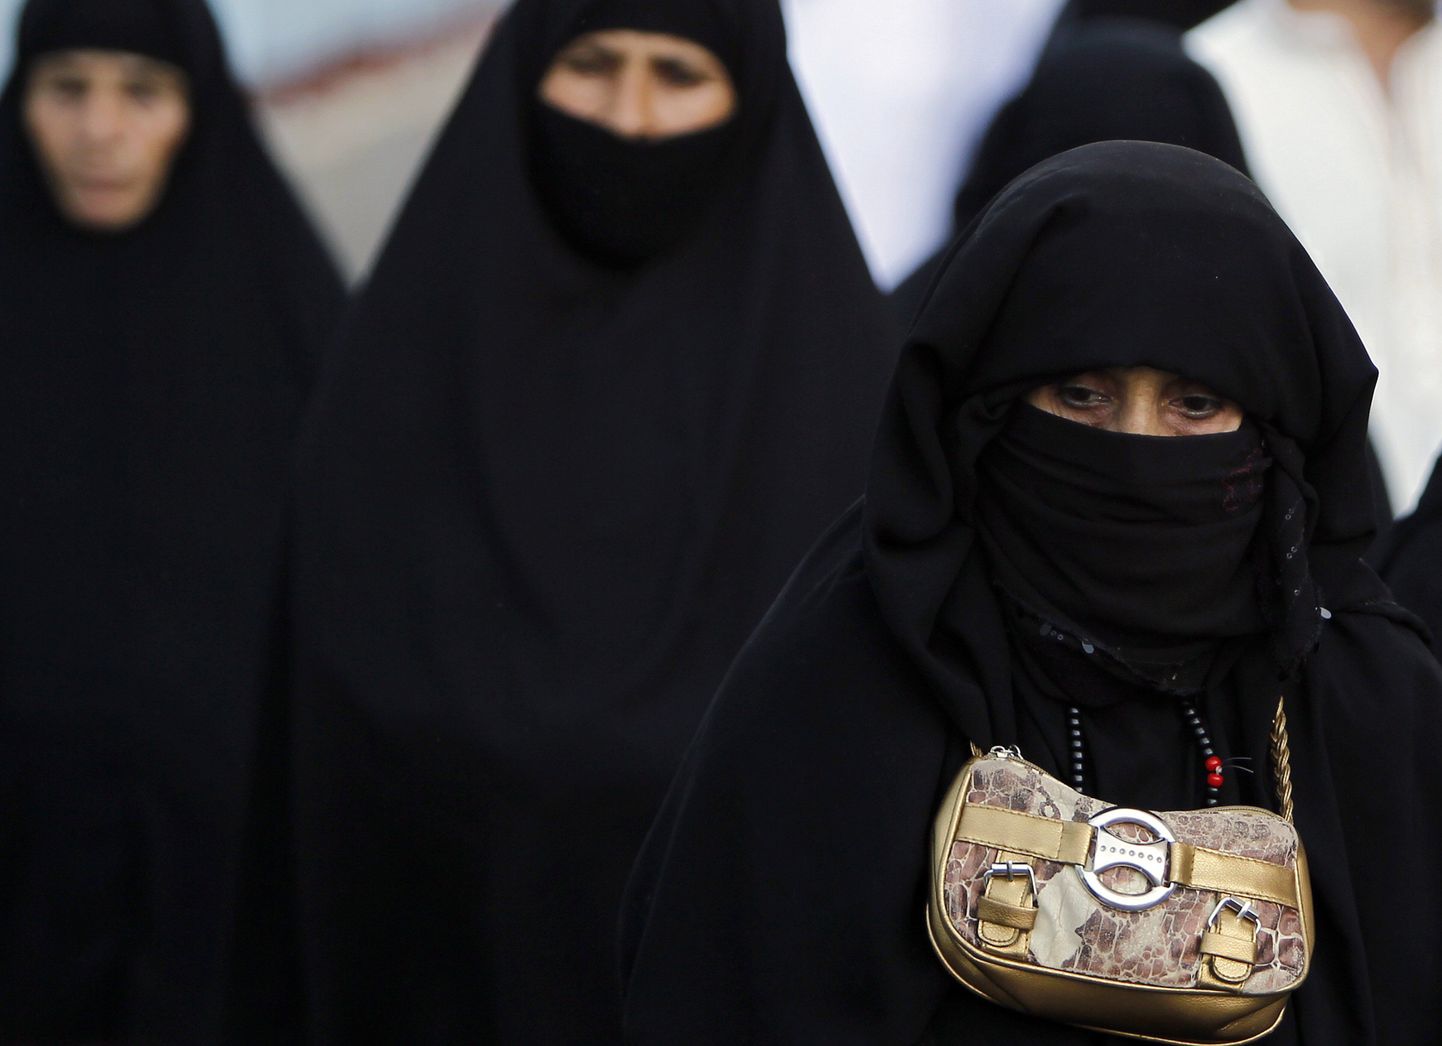 Palverändurid teel Mekasse.
Värske raport näitab, et Saudi Araabia on naiste jaoks maailma teine kõige hullem riik elamiseks India järel. Kõige parem olukord on naistel Kanadas.